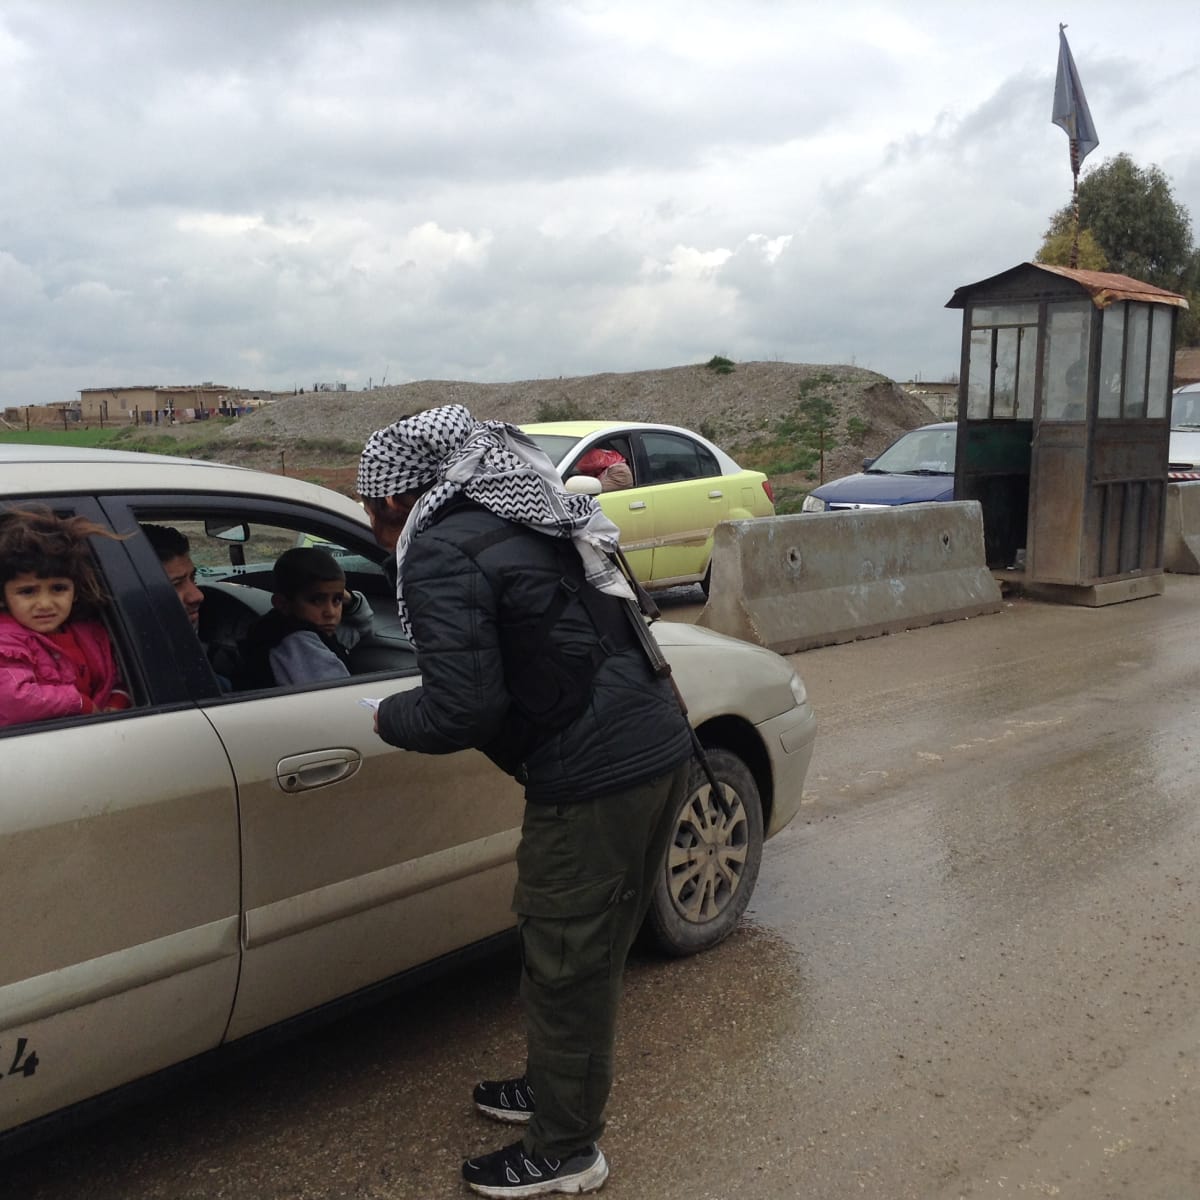 Derikin ulkpuolella turvallisuusjoukkoihion kuuluva nainen tarkistaa ajoneuvoja.